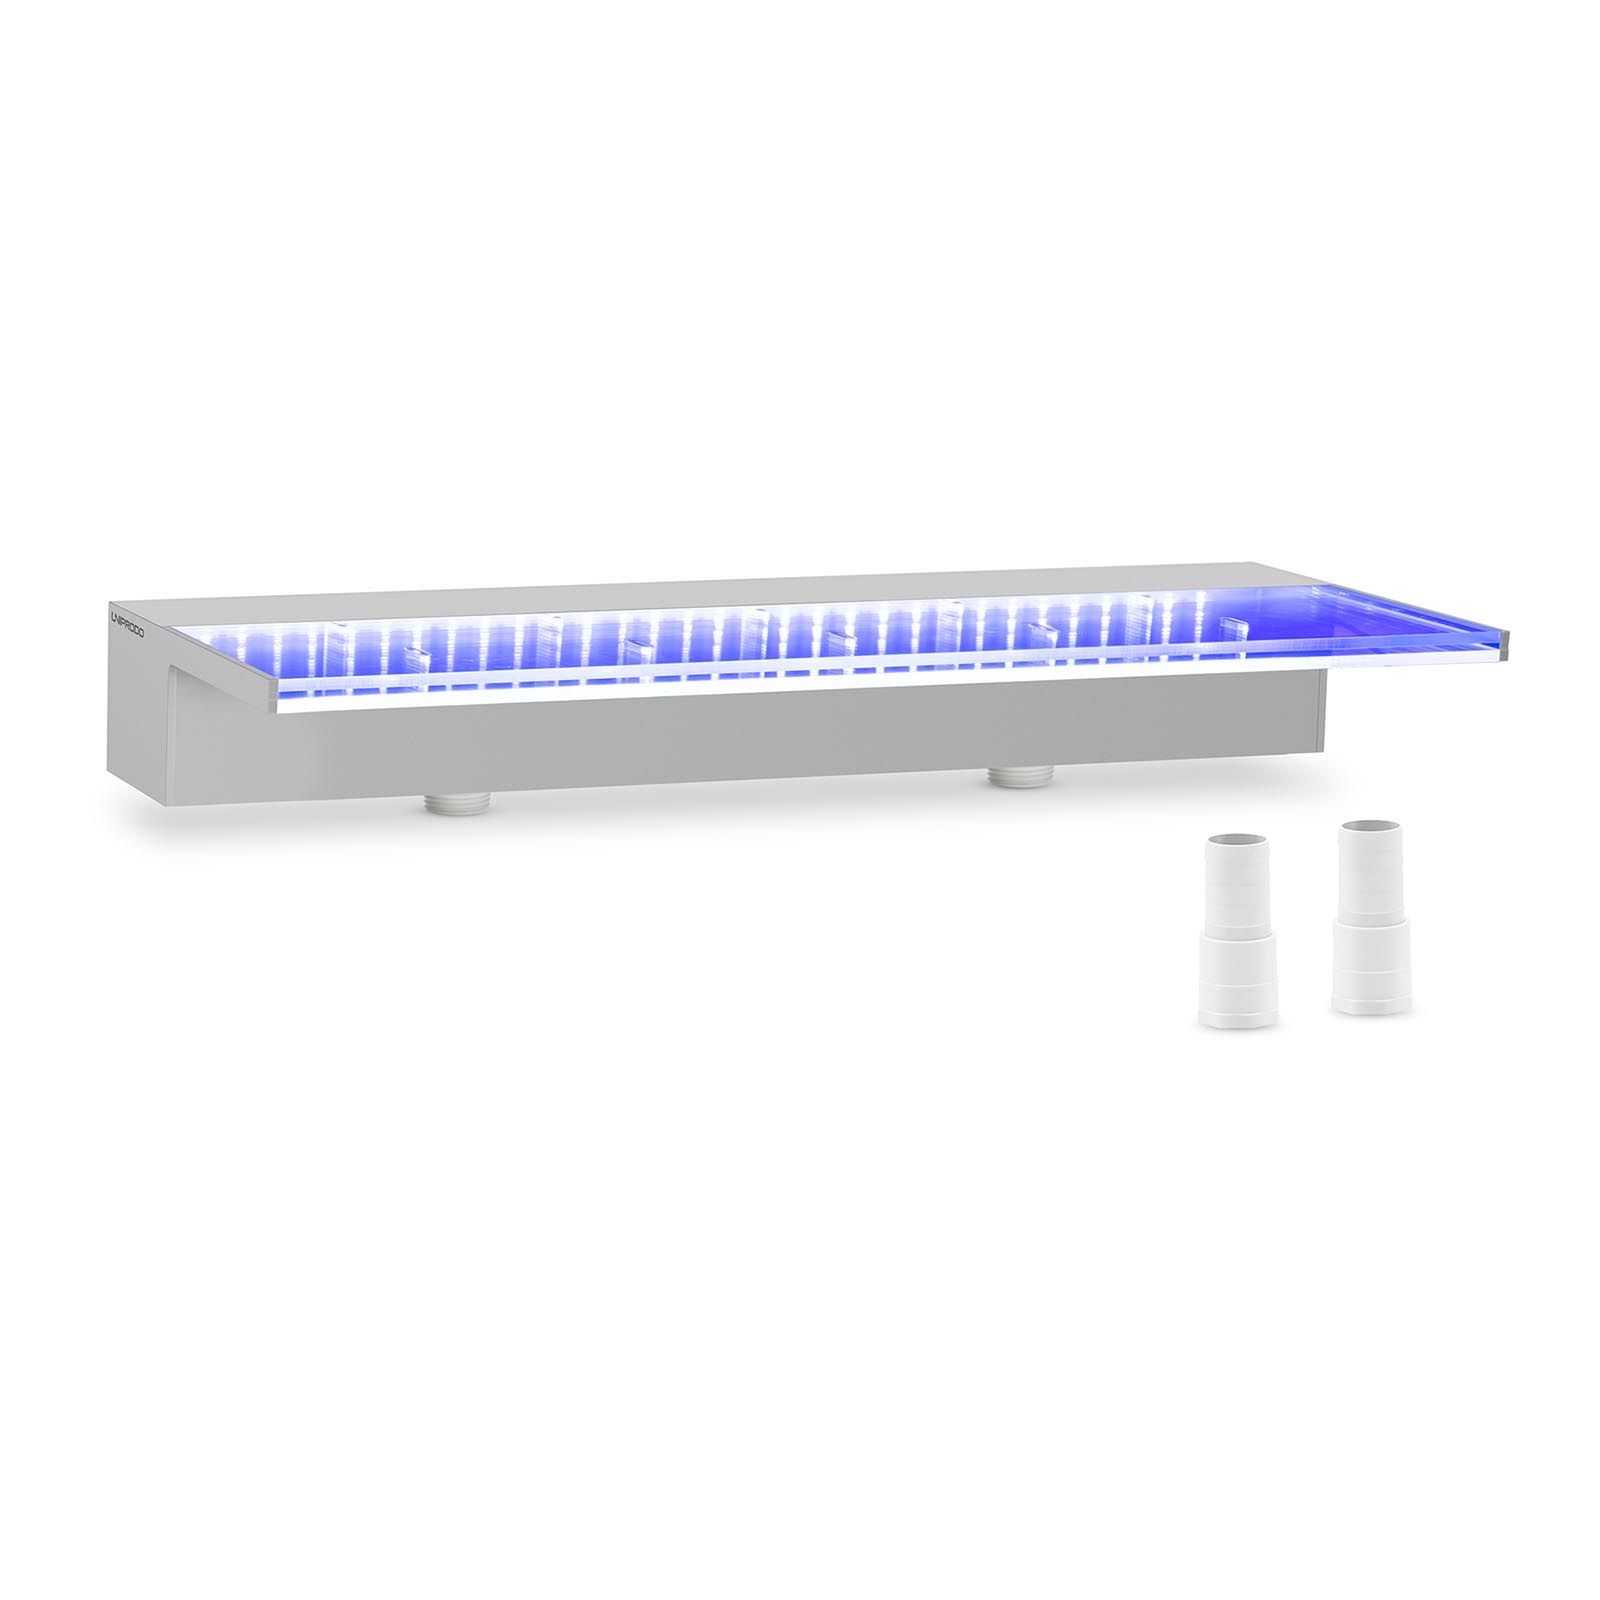 Ντους υπερχείλισης - 60 cm - Φωτισμός LED - Μπλε / Λευκό - {{Lip_lenght}} mm έξοδος νερού